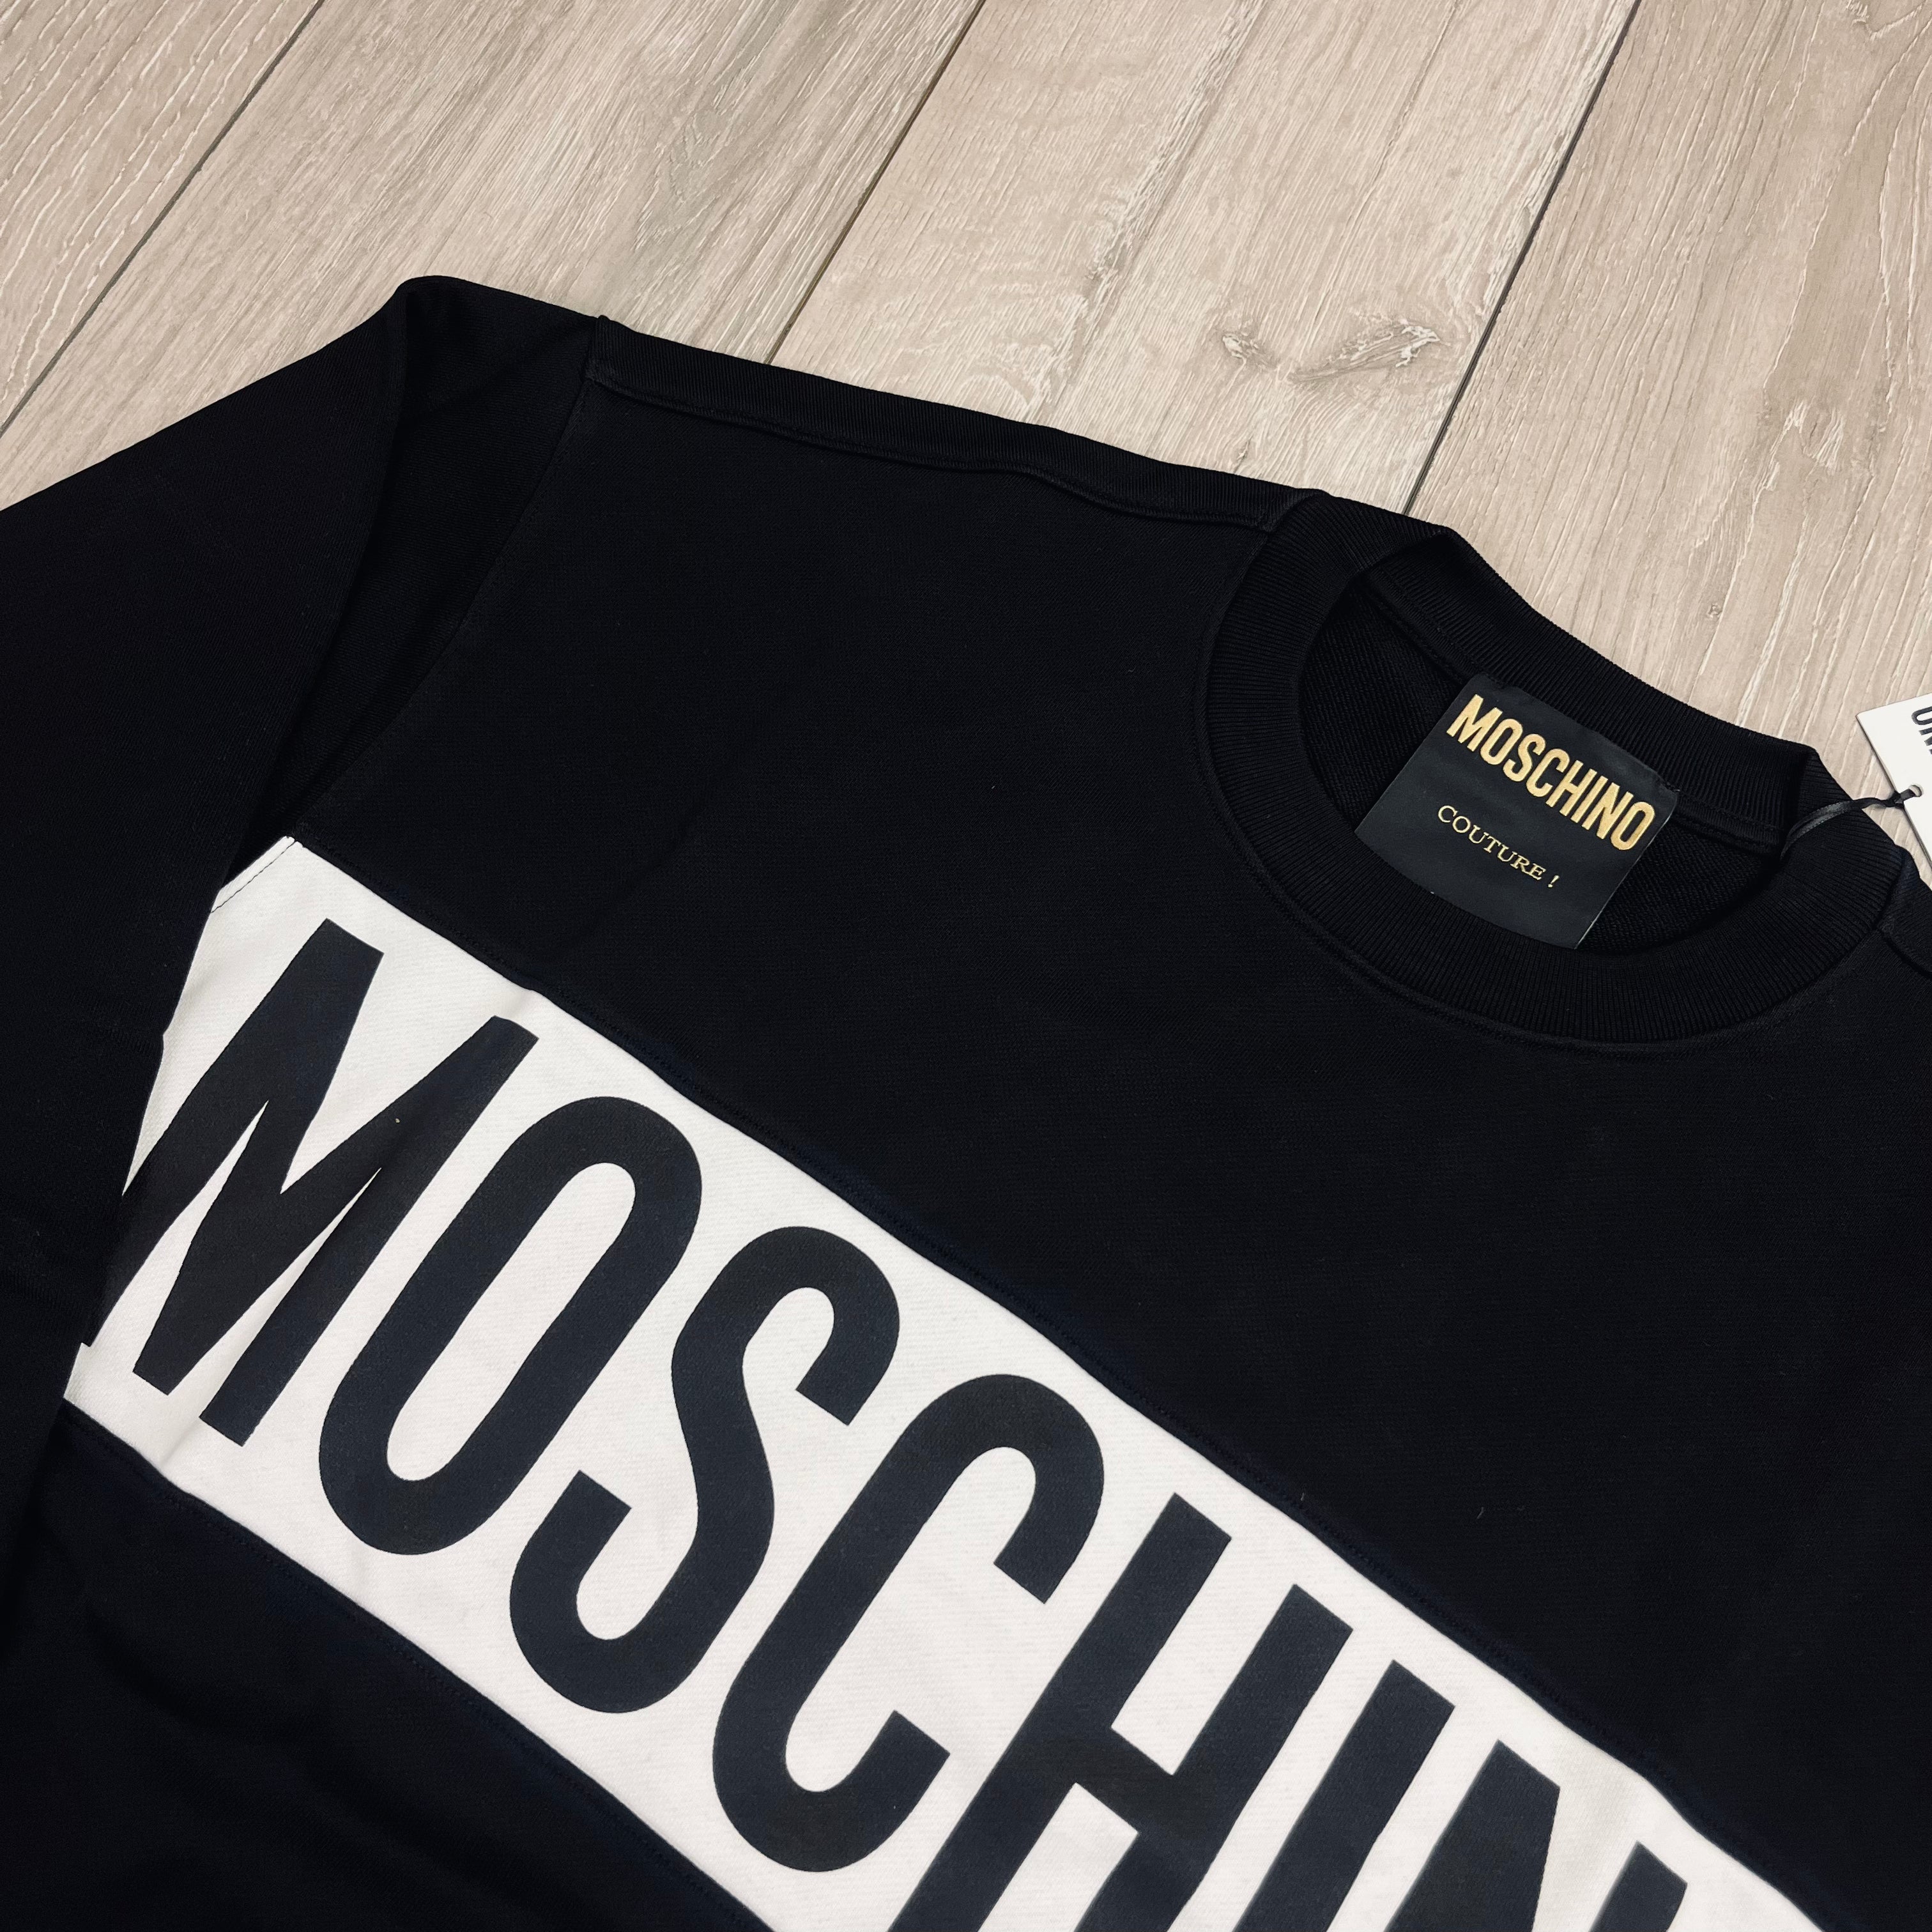 Moschino Banded Sweatshirt